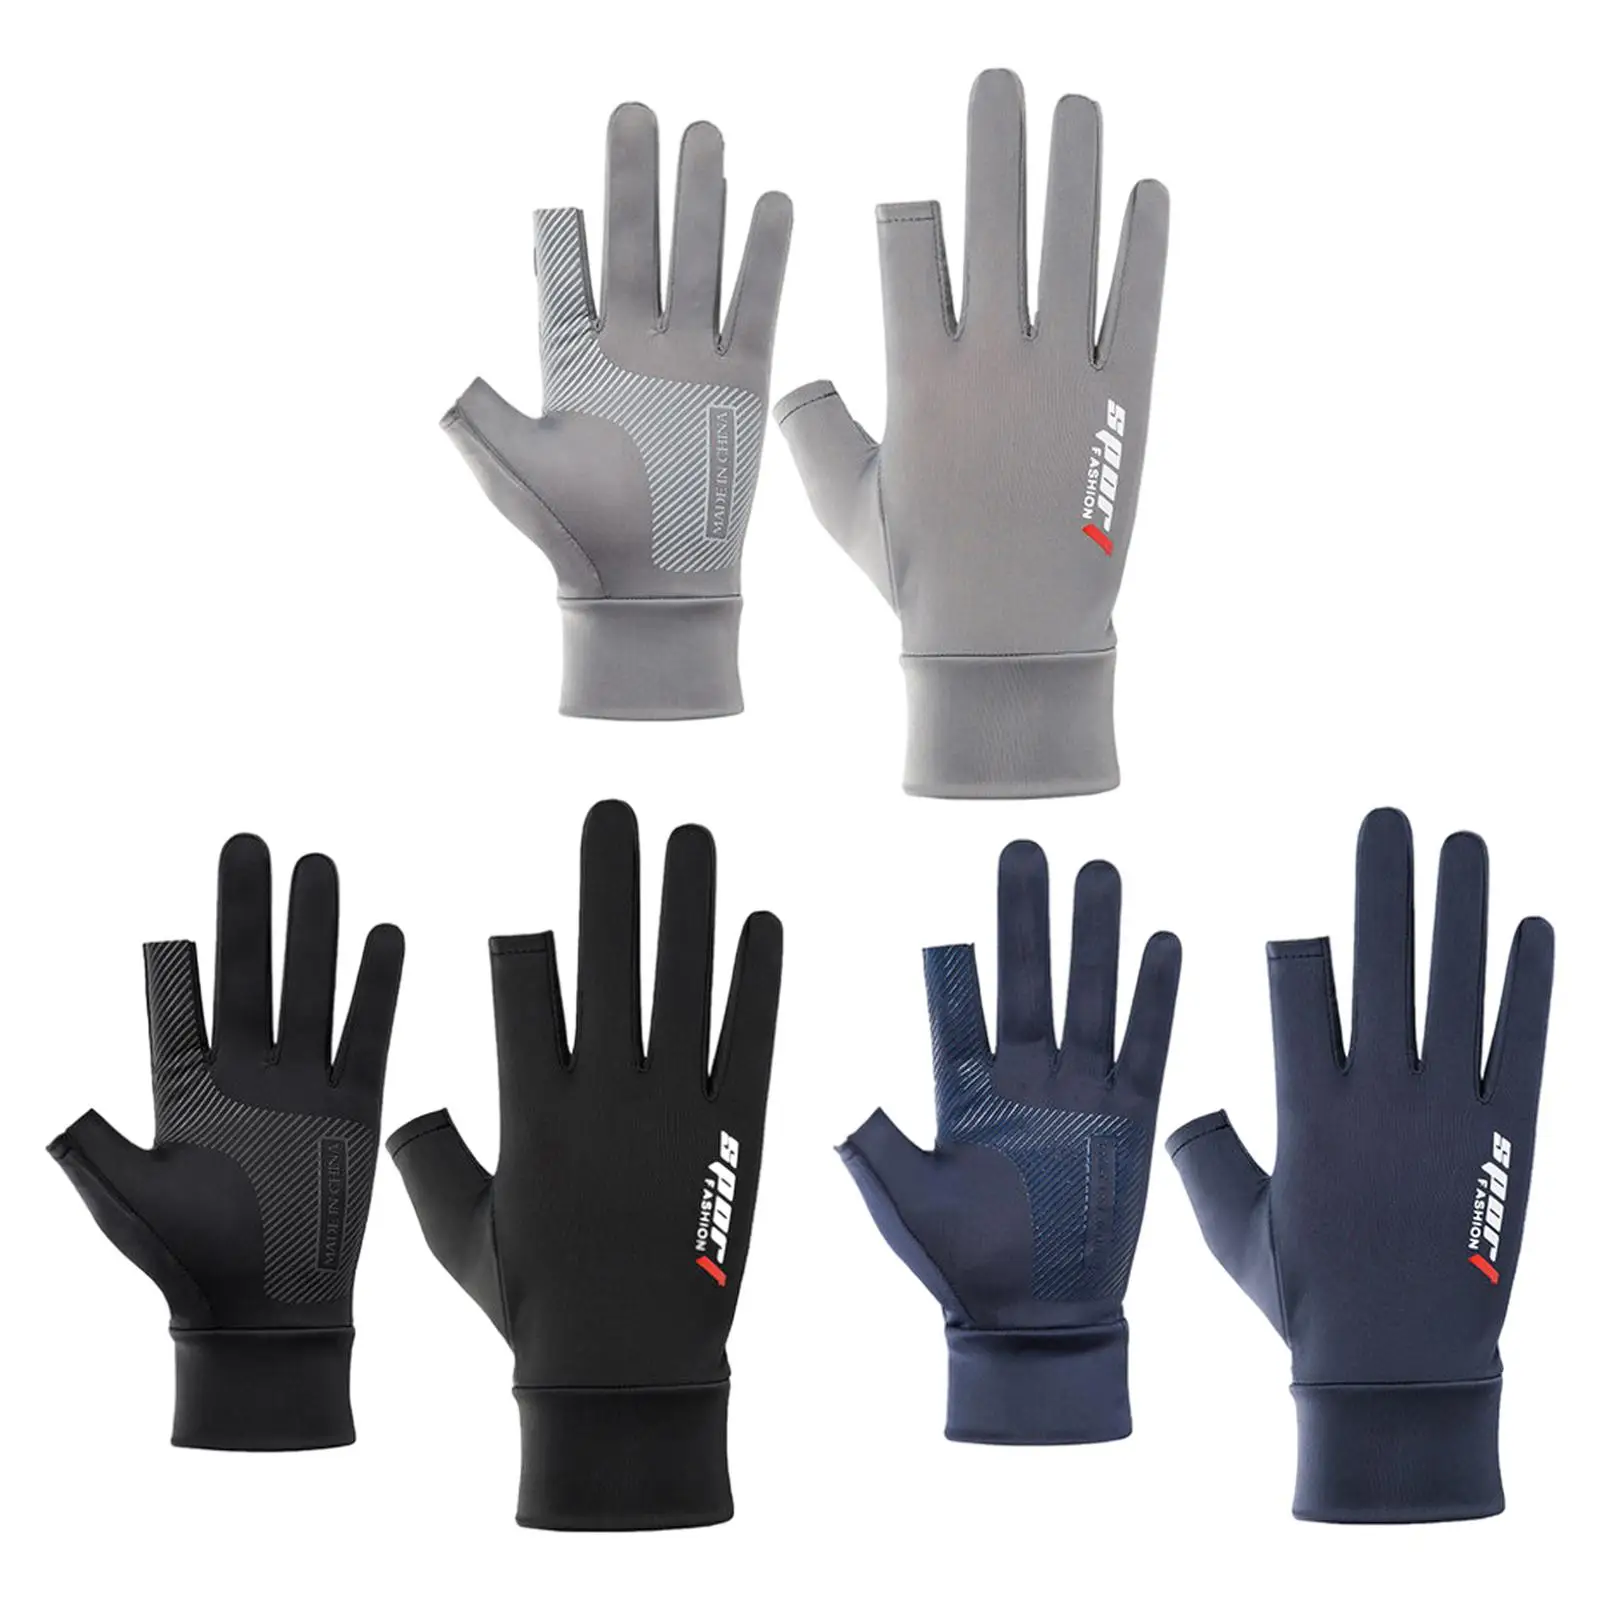 2  Bike Gloves Cycling Gloves  Full Finger Half Finger  Non- Protective for 